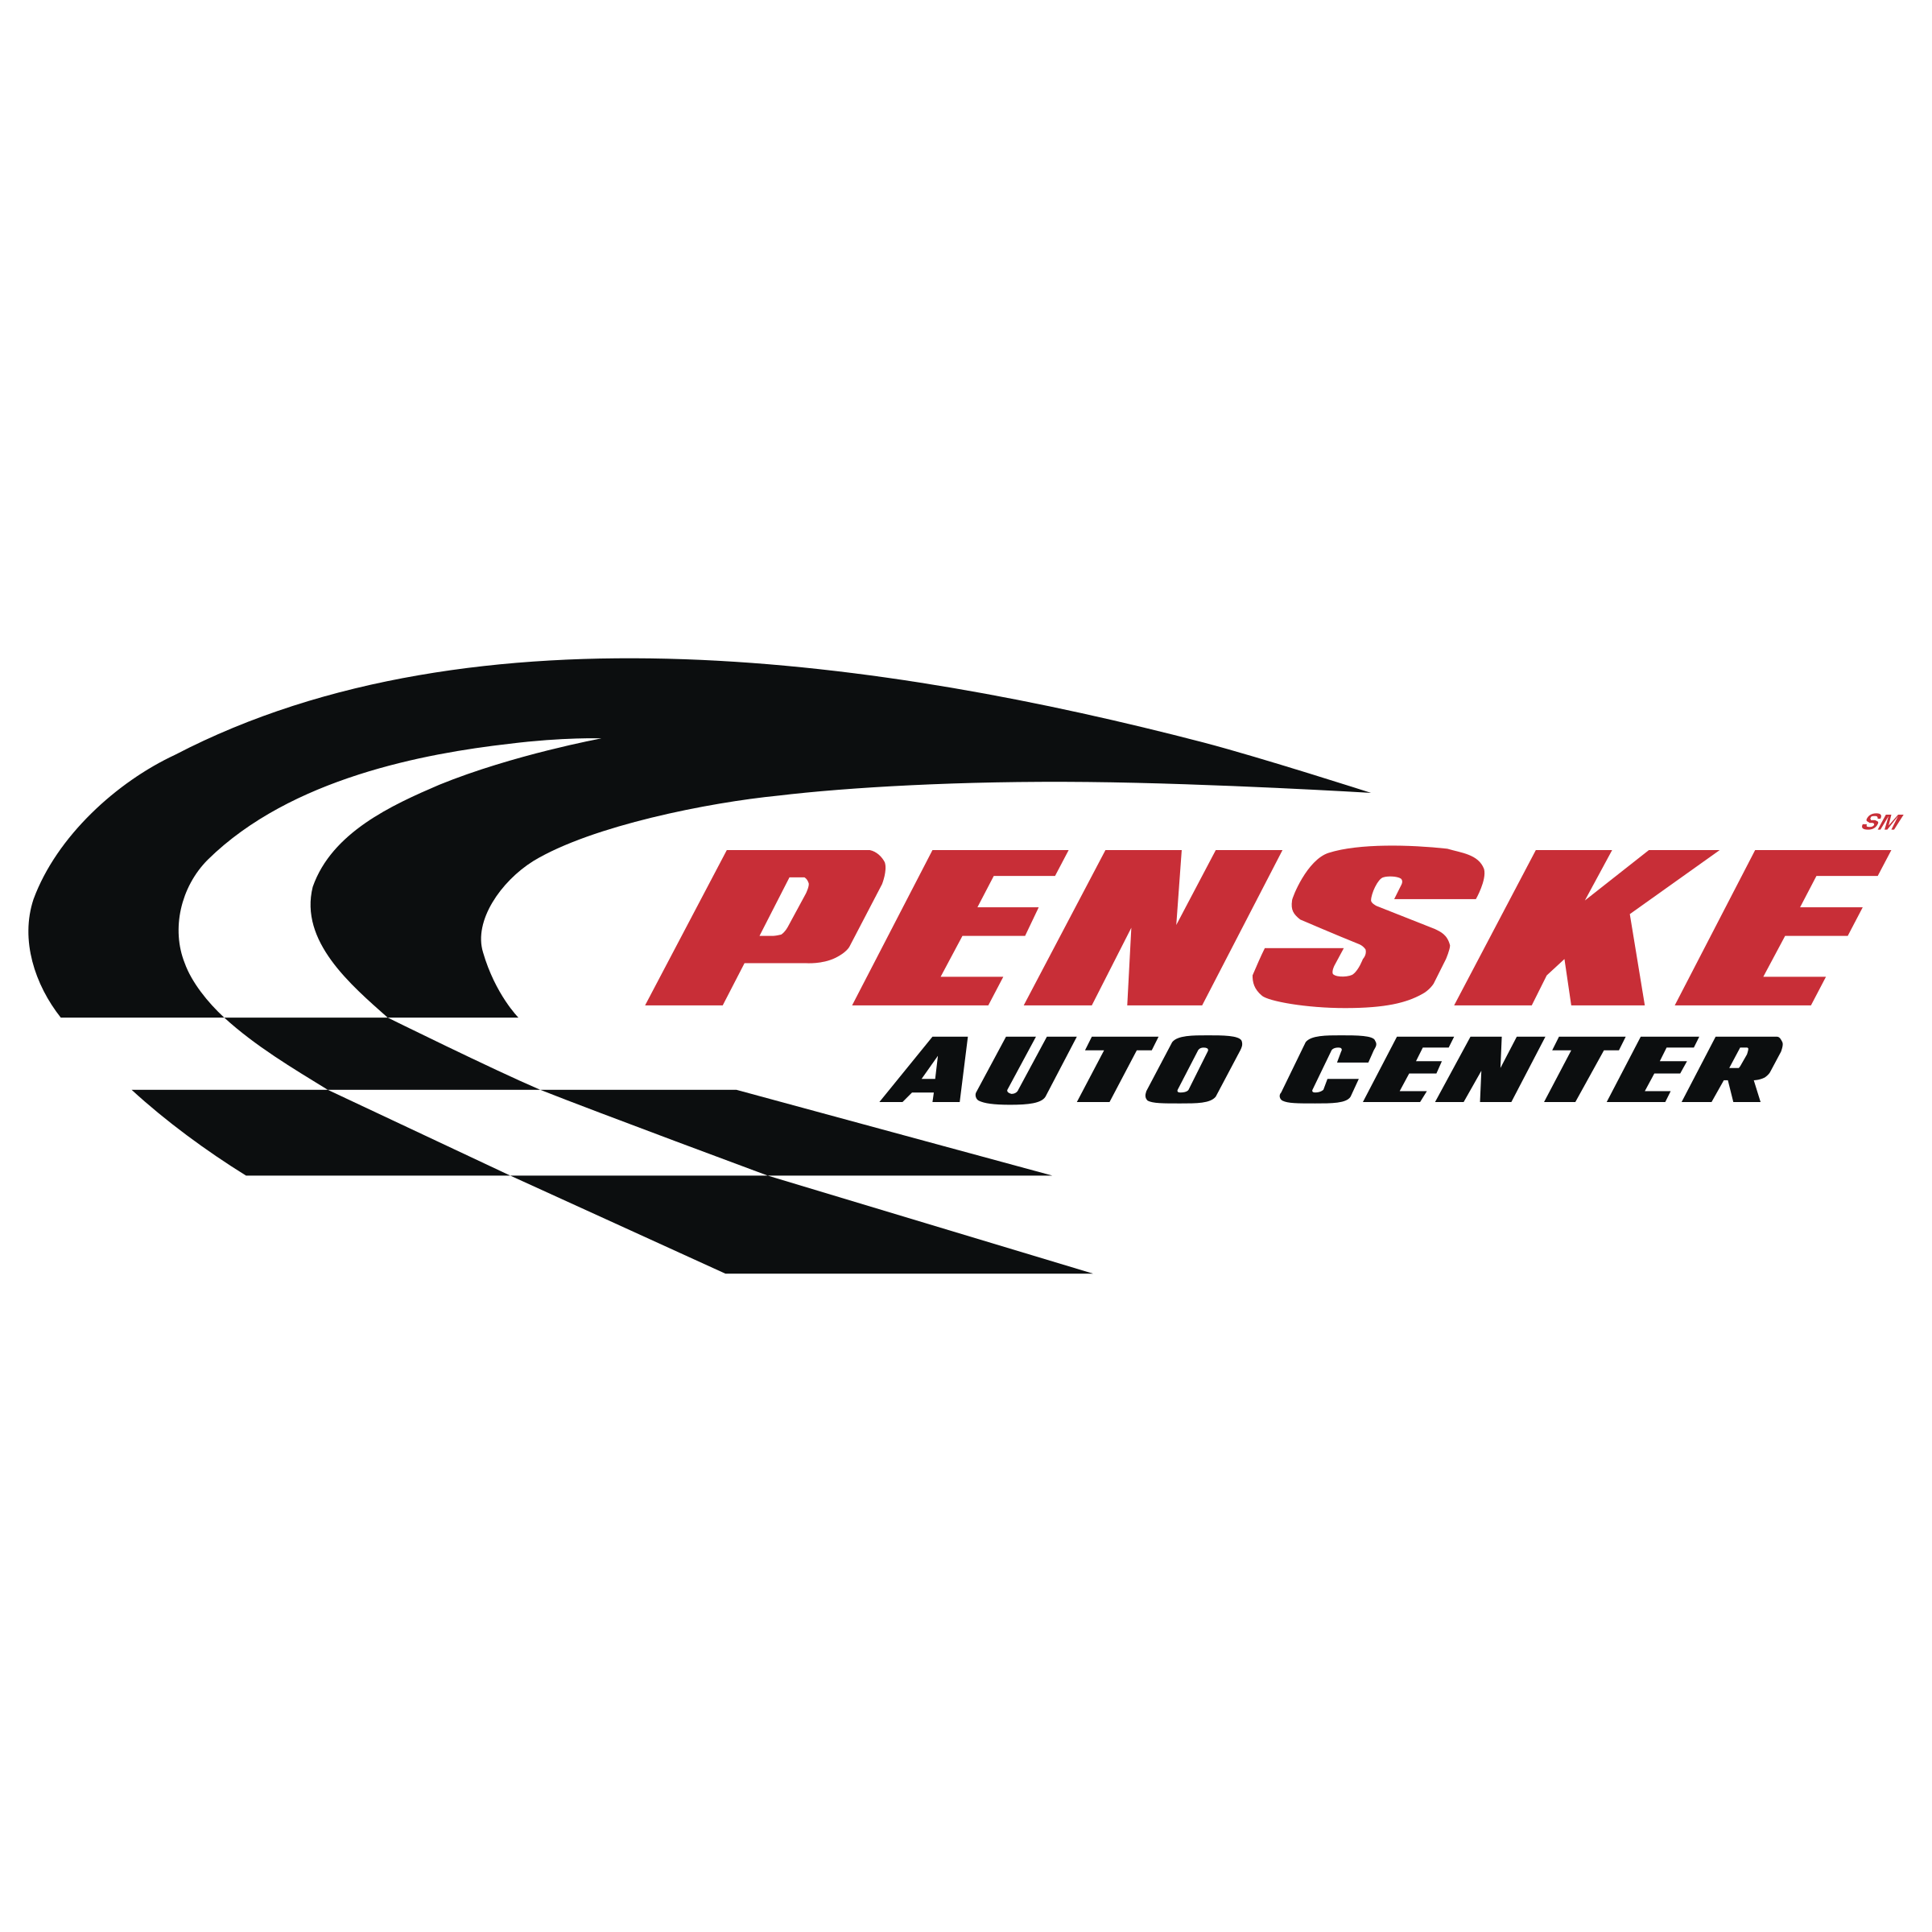 Penske Logo - Penske Logo PNG Transparent & SVG Vector - Freebie Supply